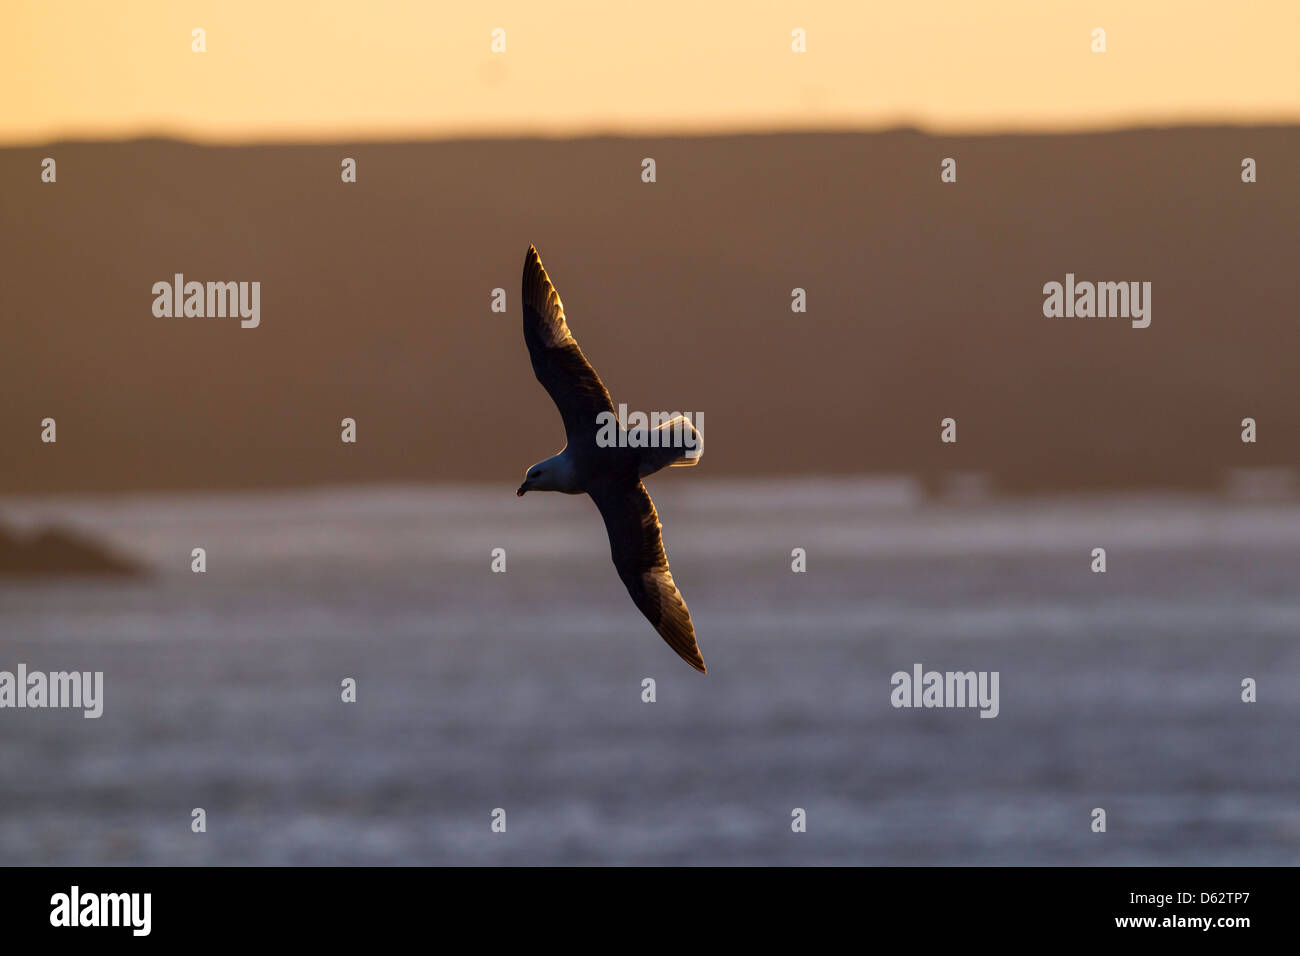 Fulmarus glacialis - fulmar en vuelo retro iluminada por el amanecer Foto de stock